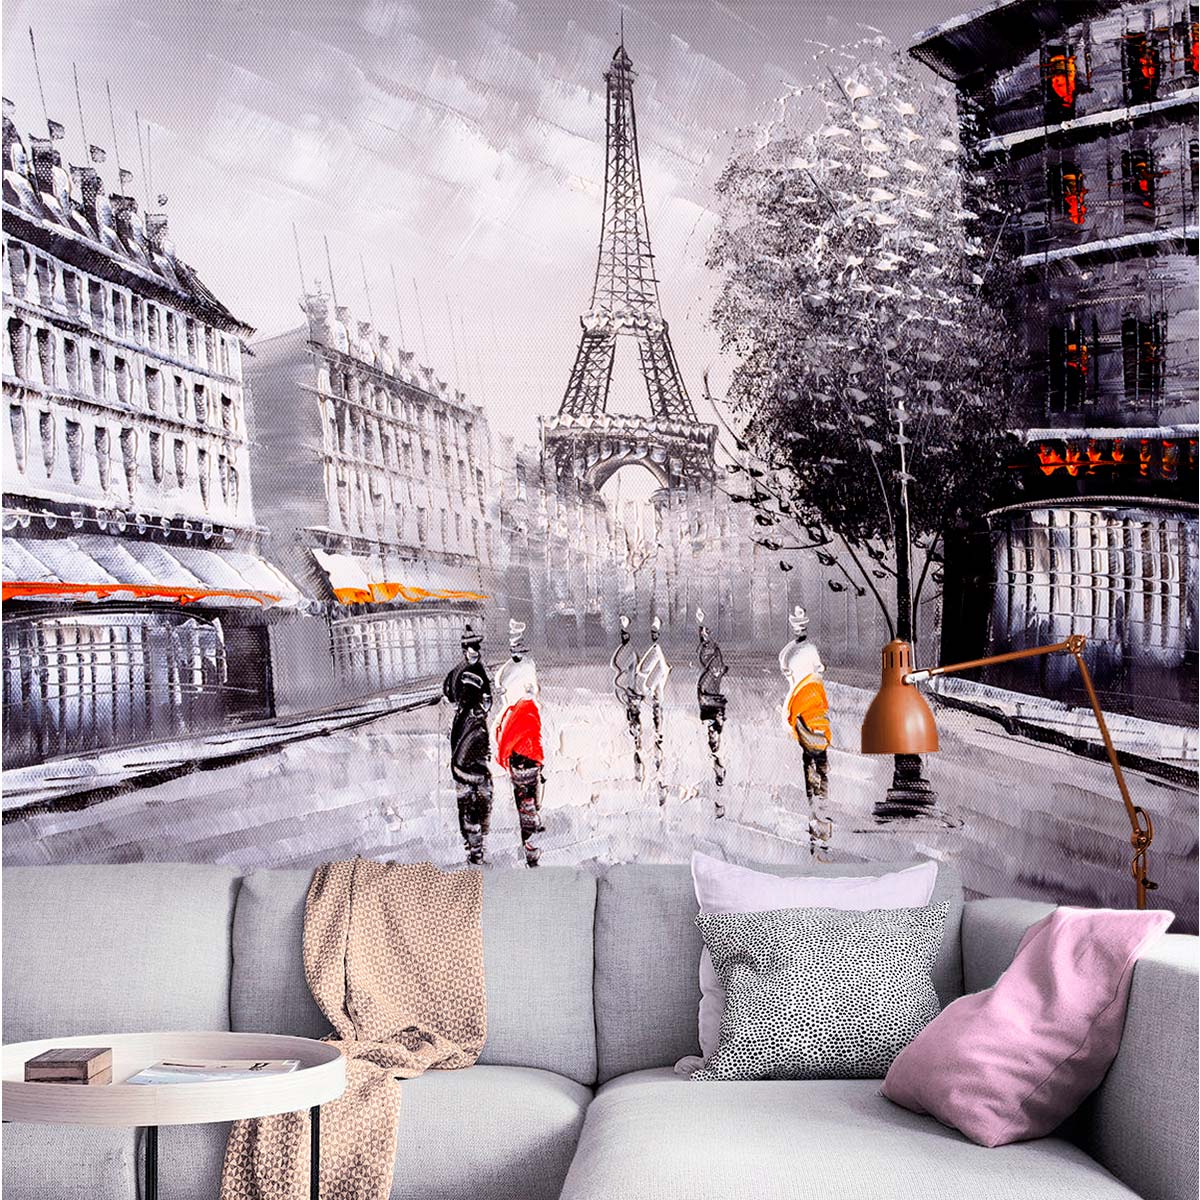 Бумажные фотообои бесшовные VEROL Париж 3,1 м2 200х155 см отделка стен декор для интерьера